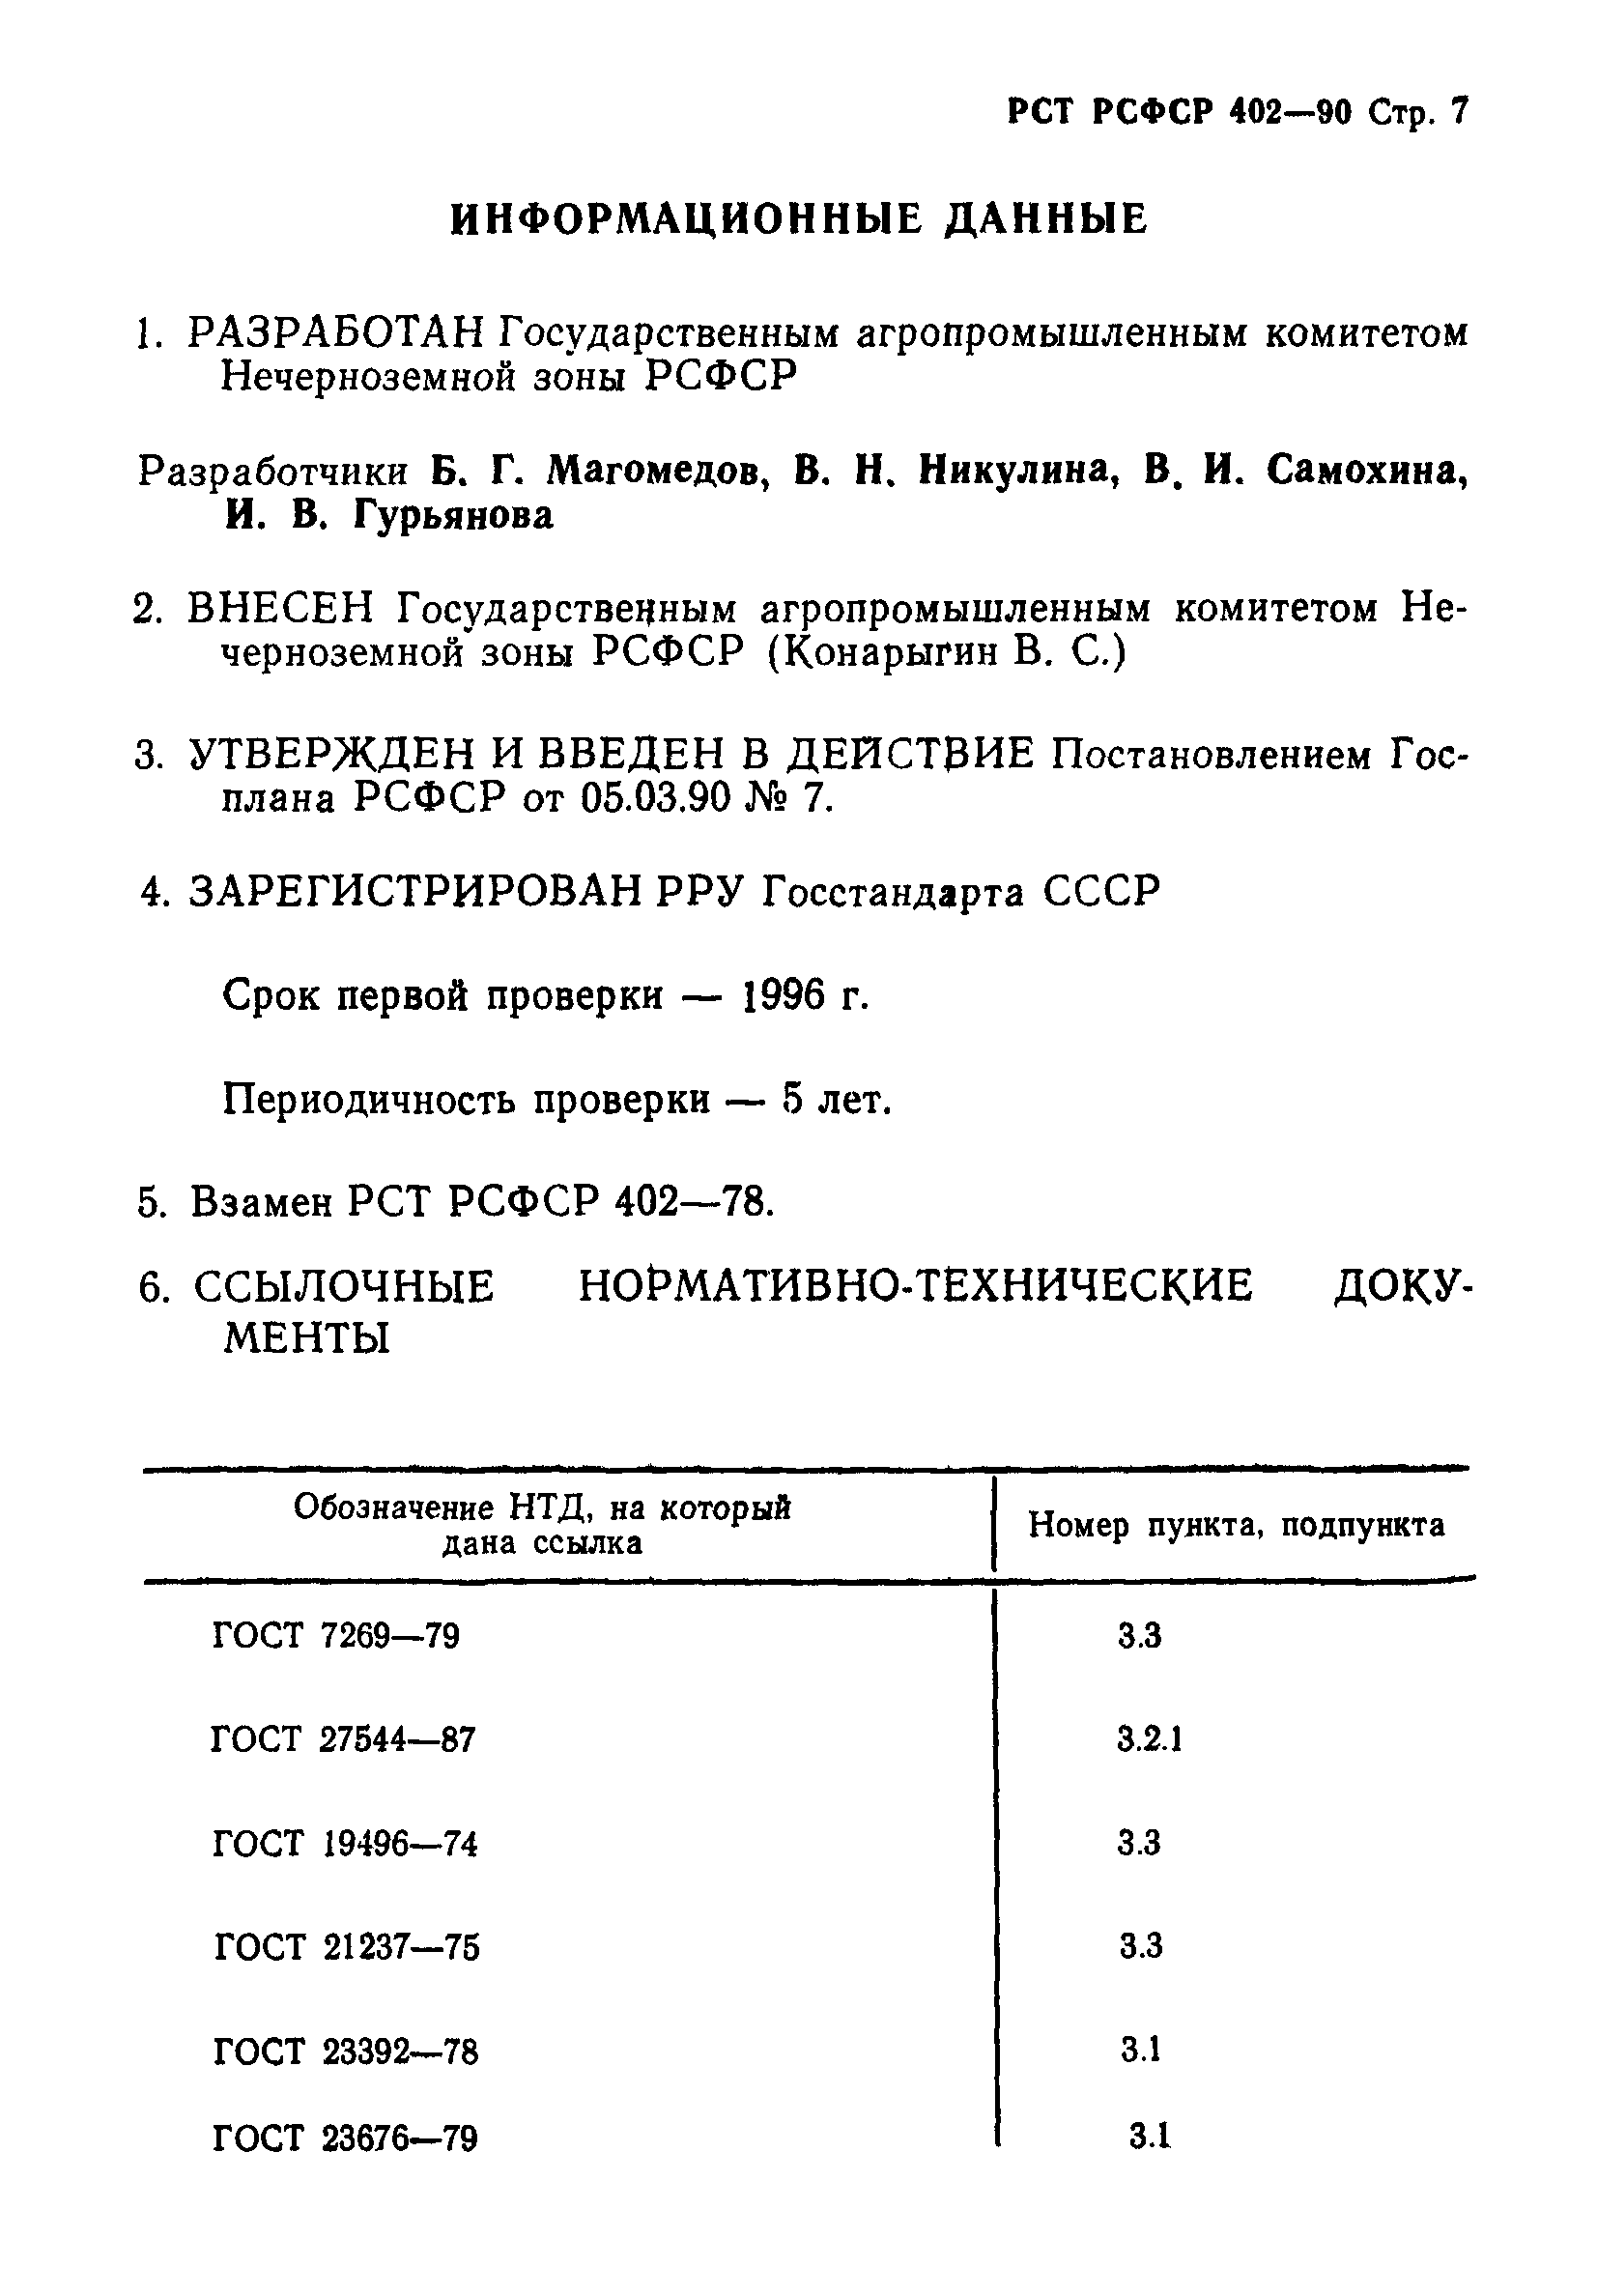 РСТ РСФСР 402-90